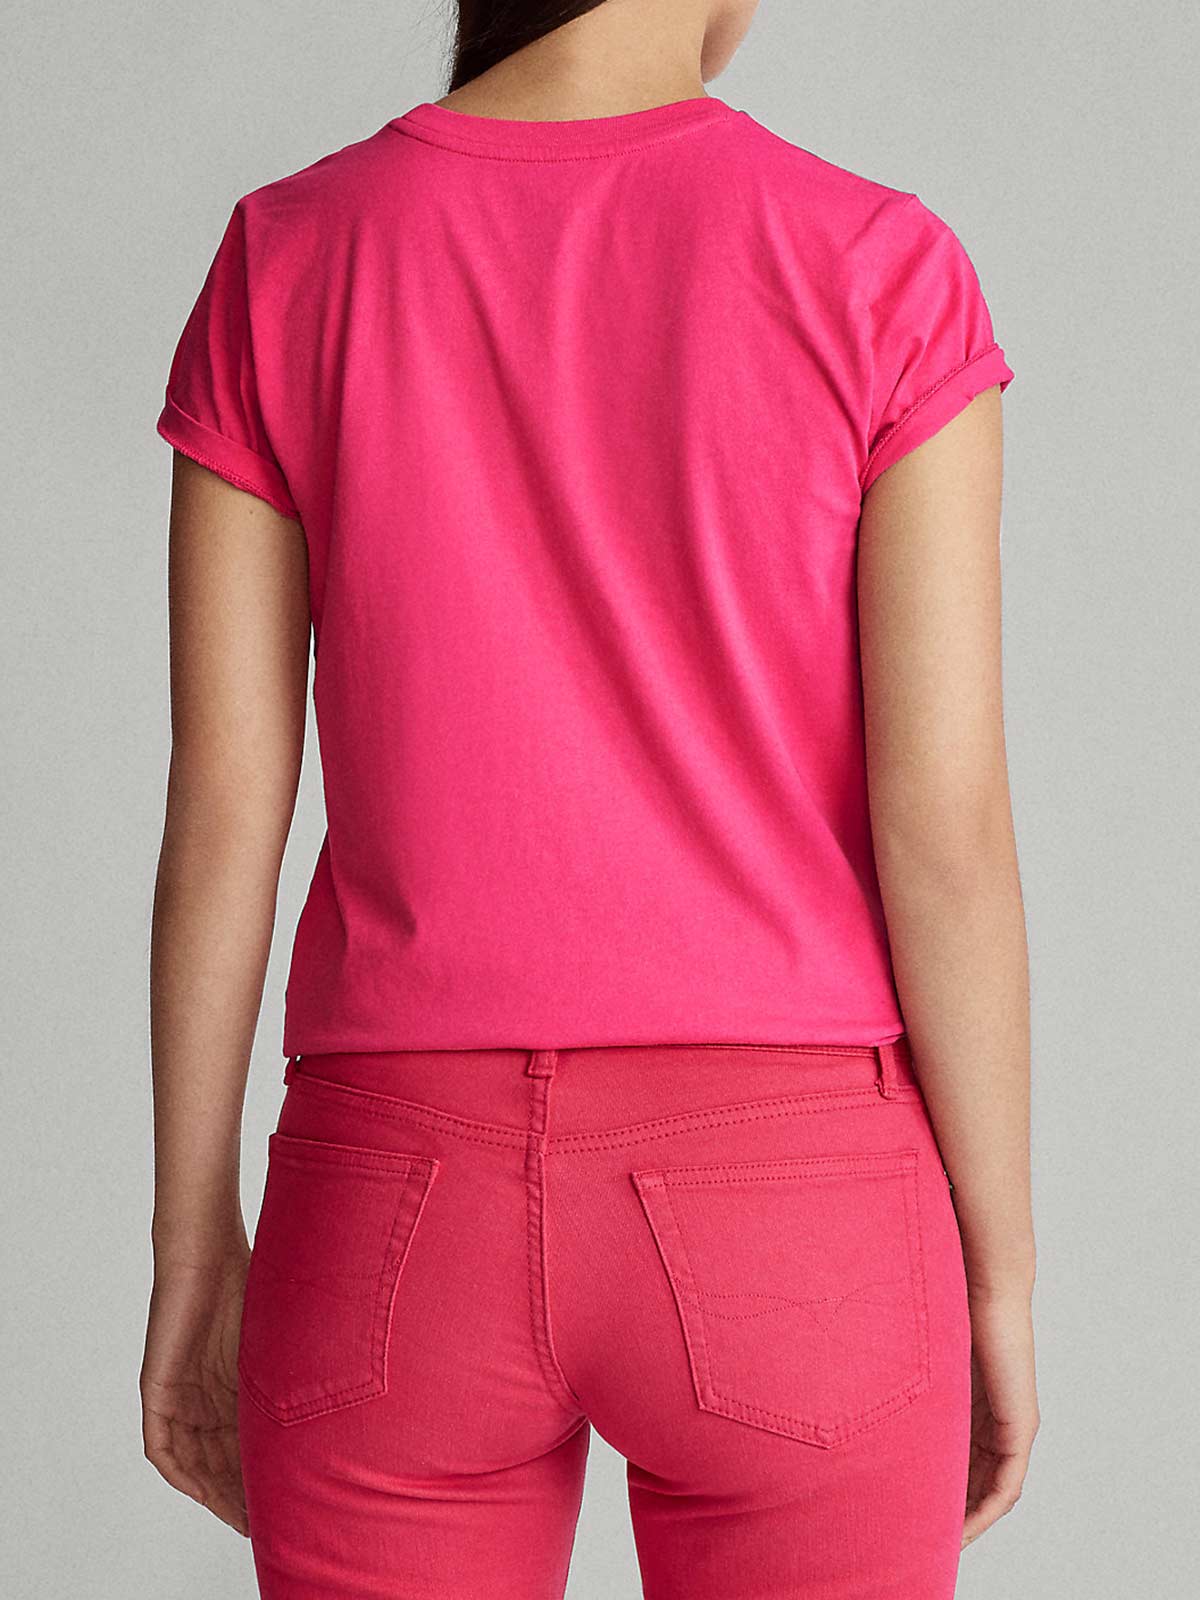 T-shirtAsh in Cotone di colore Rosa Donna Abbigliamento da T-shirt e top da T-shirt 